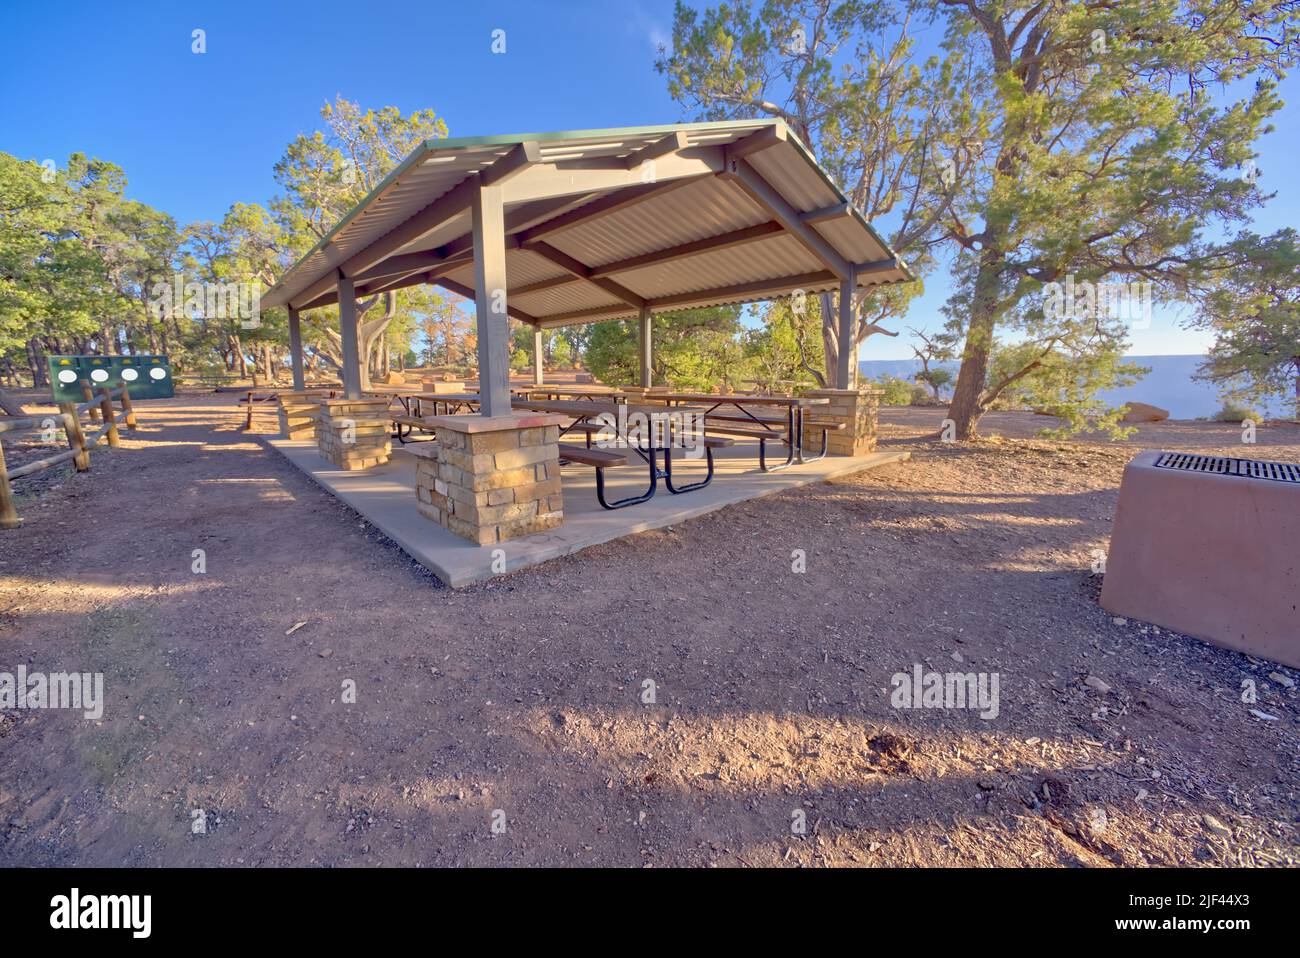 L'area picnic di Shoshone Point al Grand Canyon Arizona. Parco pubblico, non è richiesta alcuna liberazione. Foto Stock